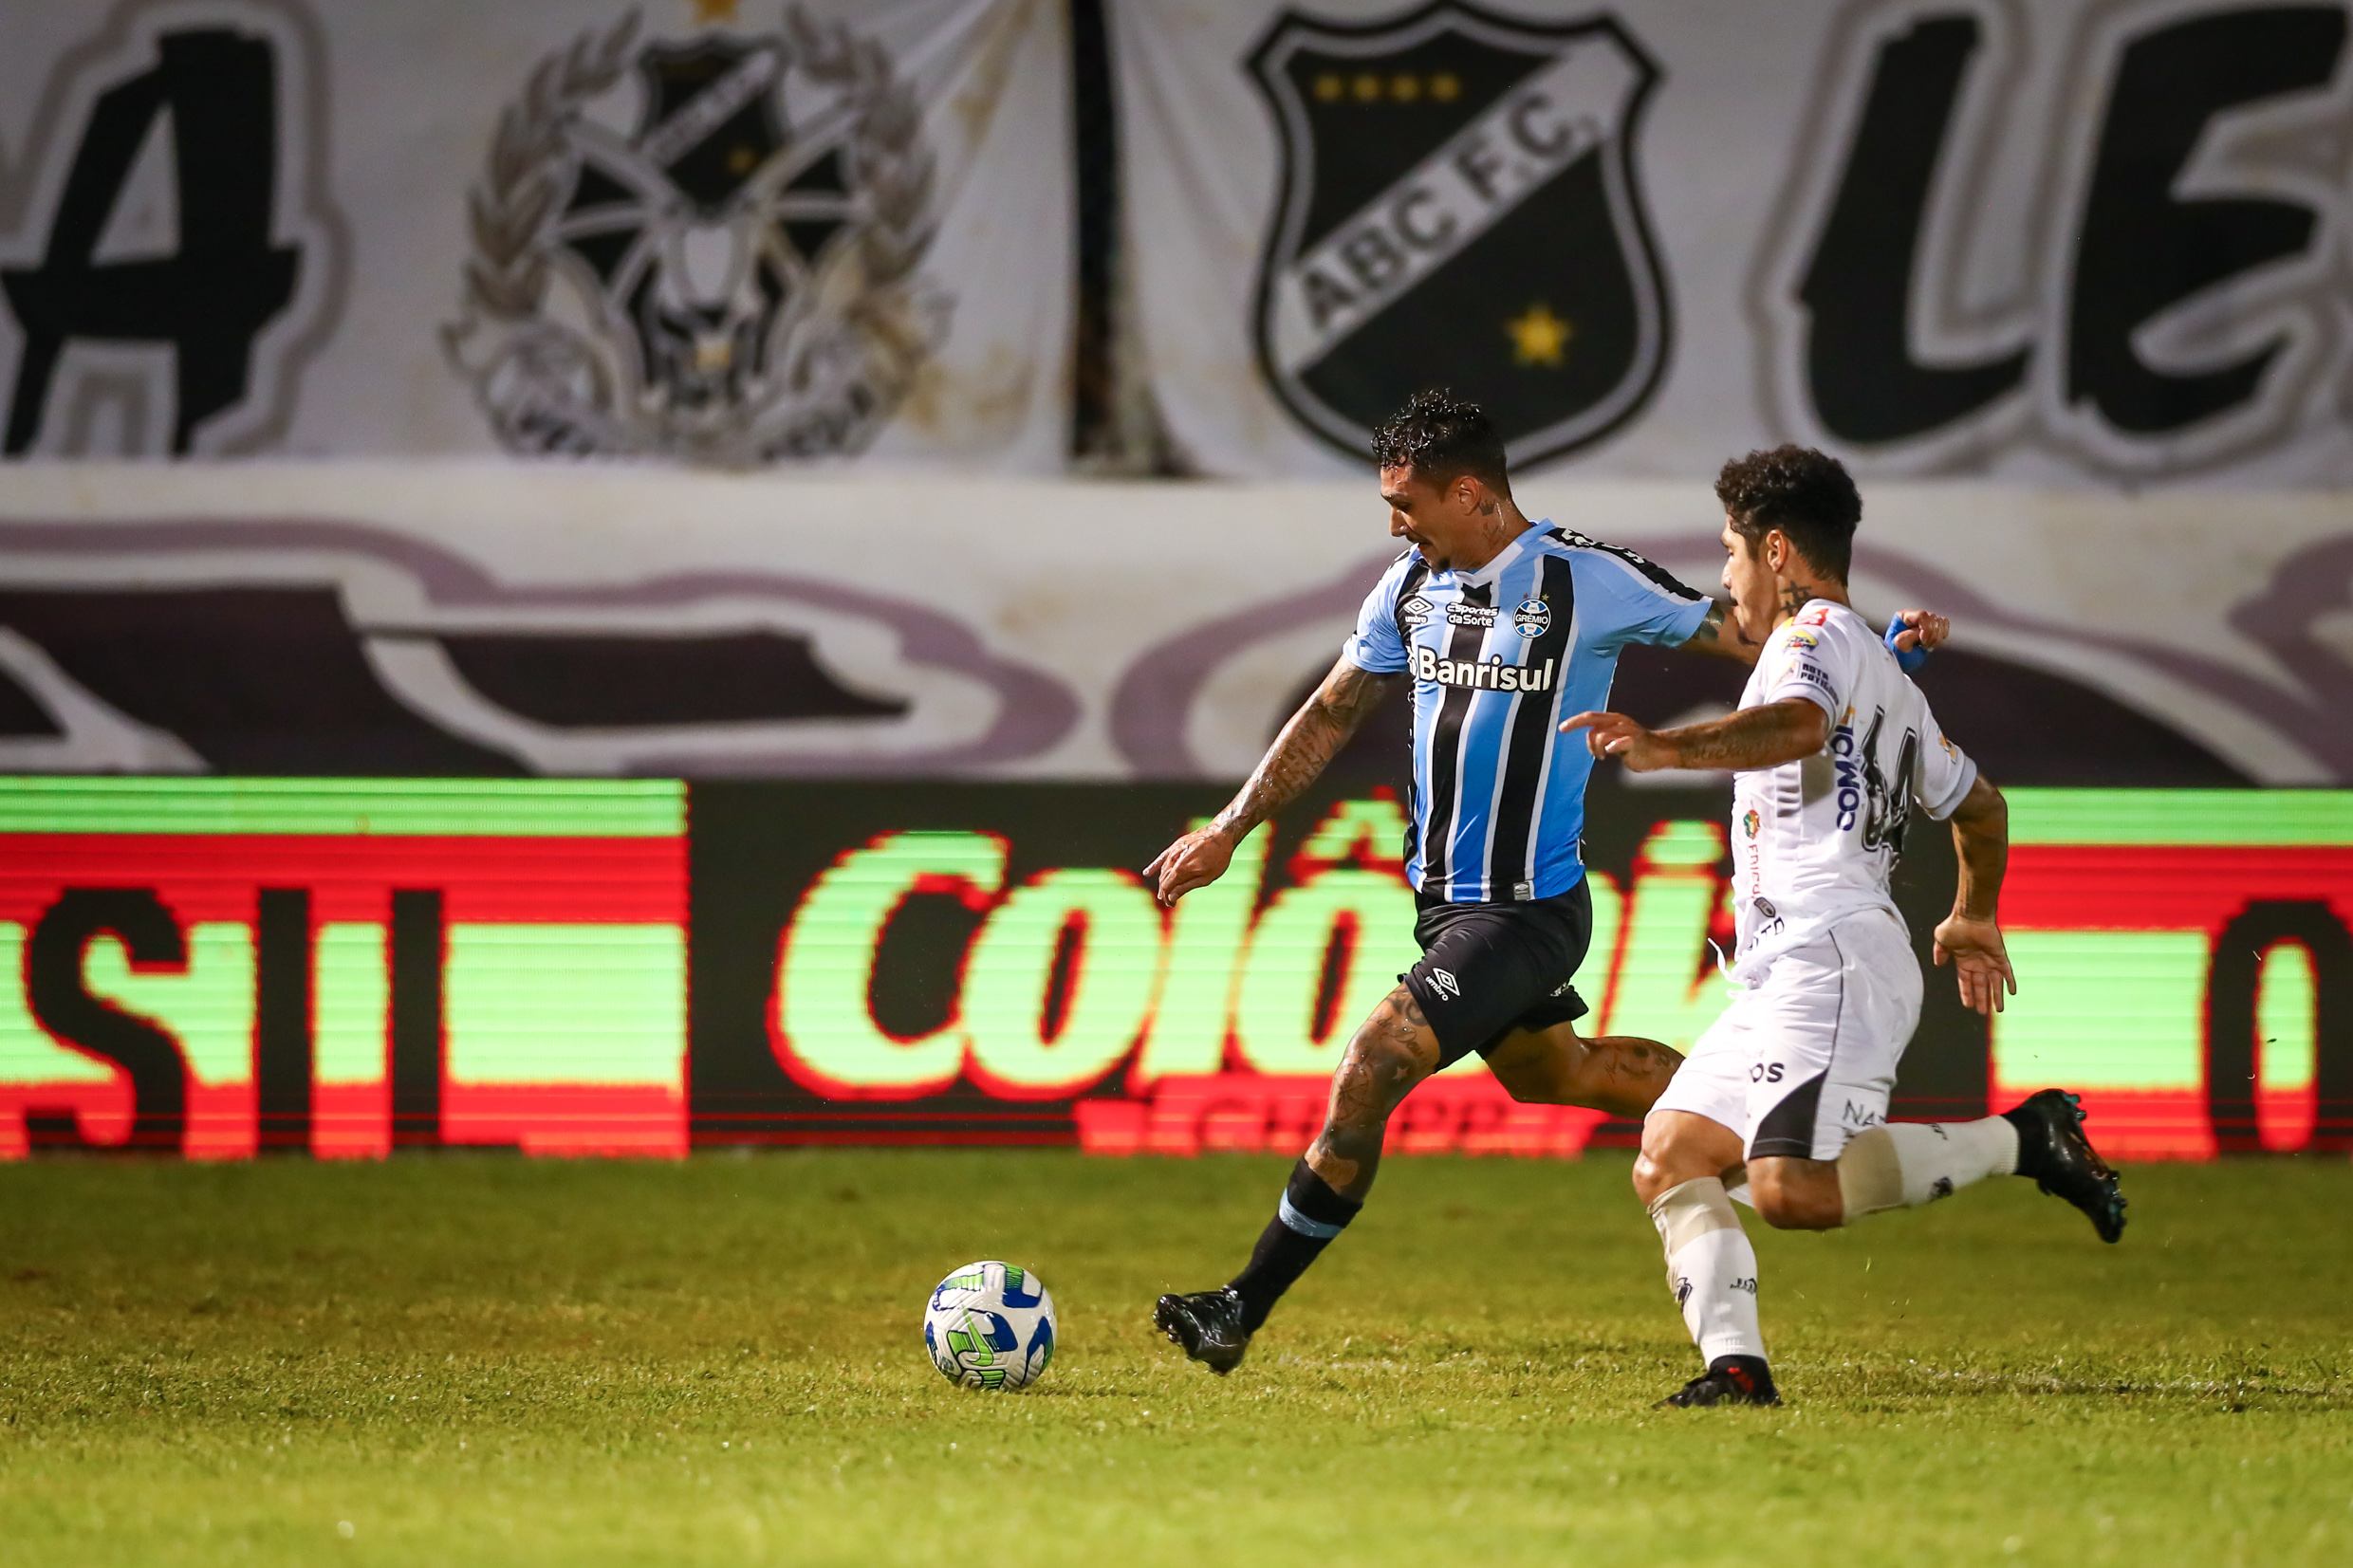 Grêmio vs ABC: Clash in the Copa do Brasil